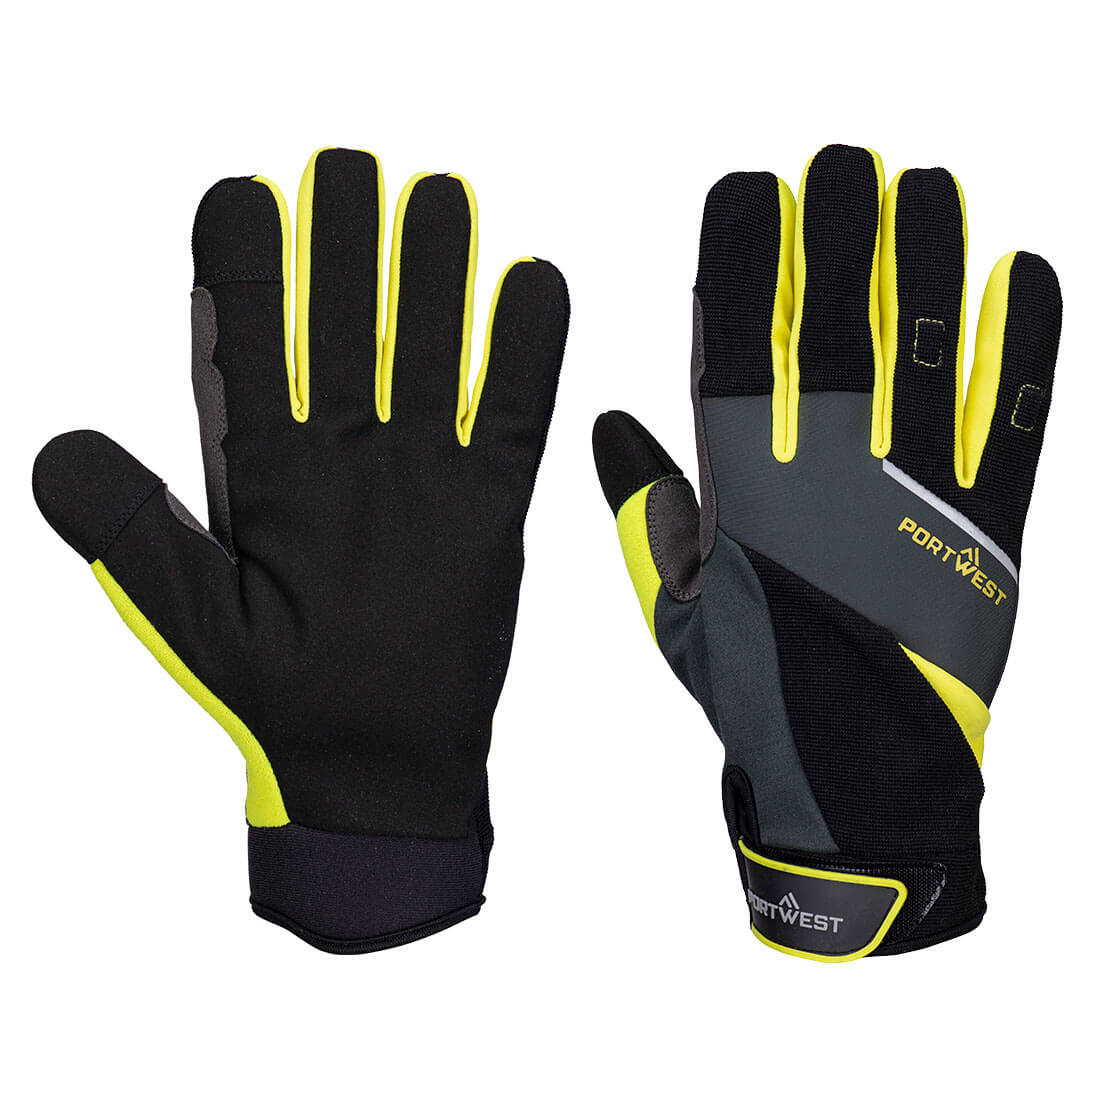 DX4 LR Cut Glove  (A774)